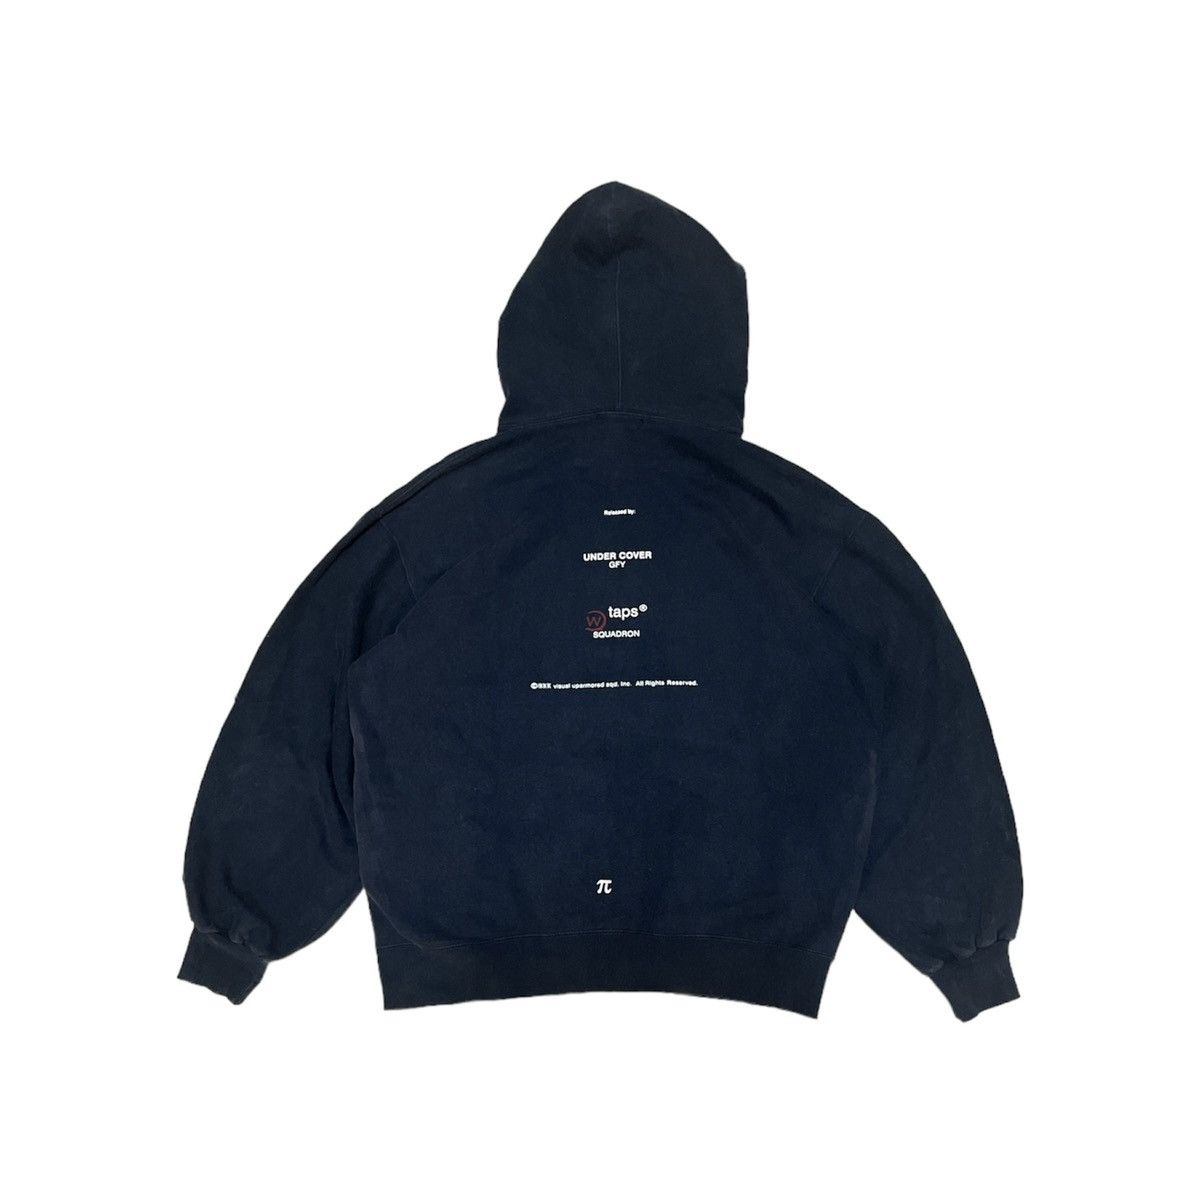 1999 Undercover x Wtaps hoodies - 10